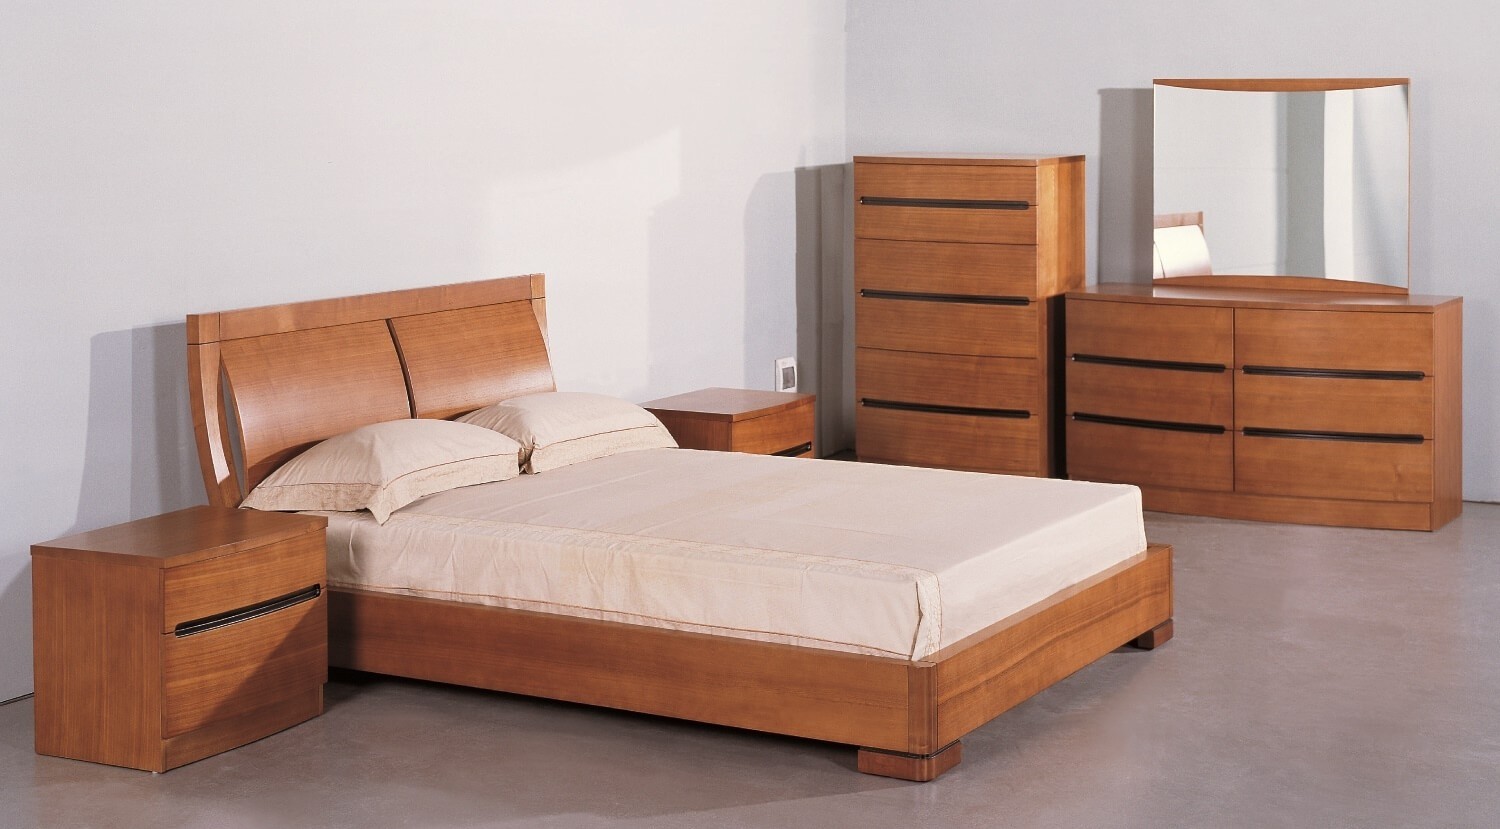 teak bedroom furniture usa